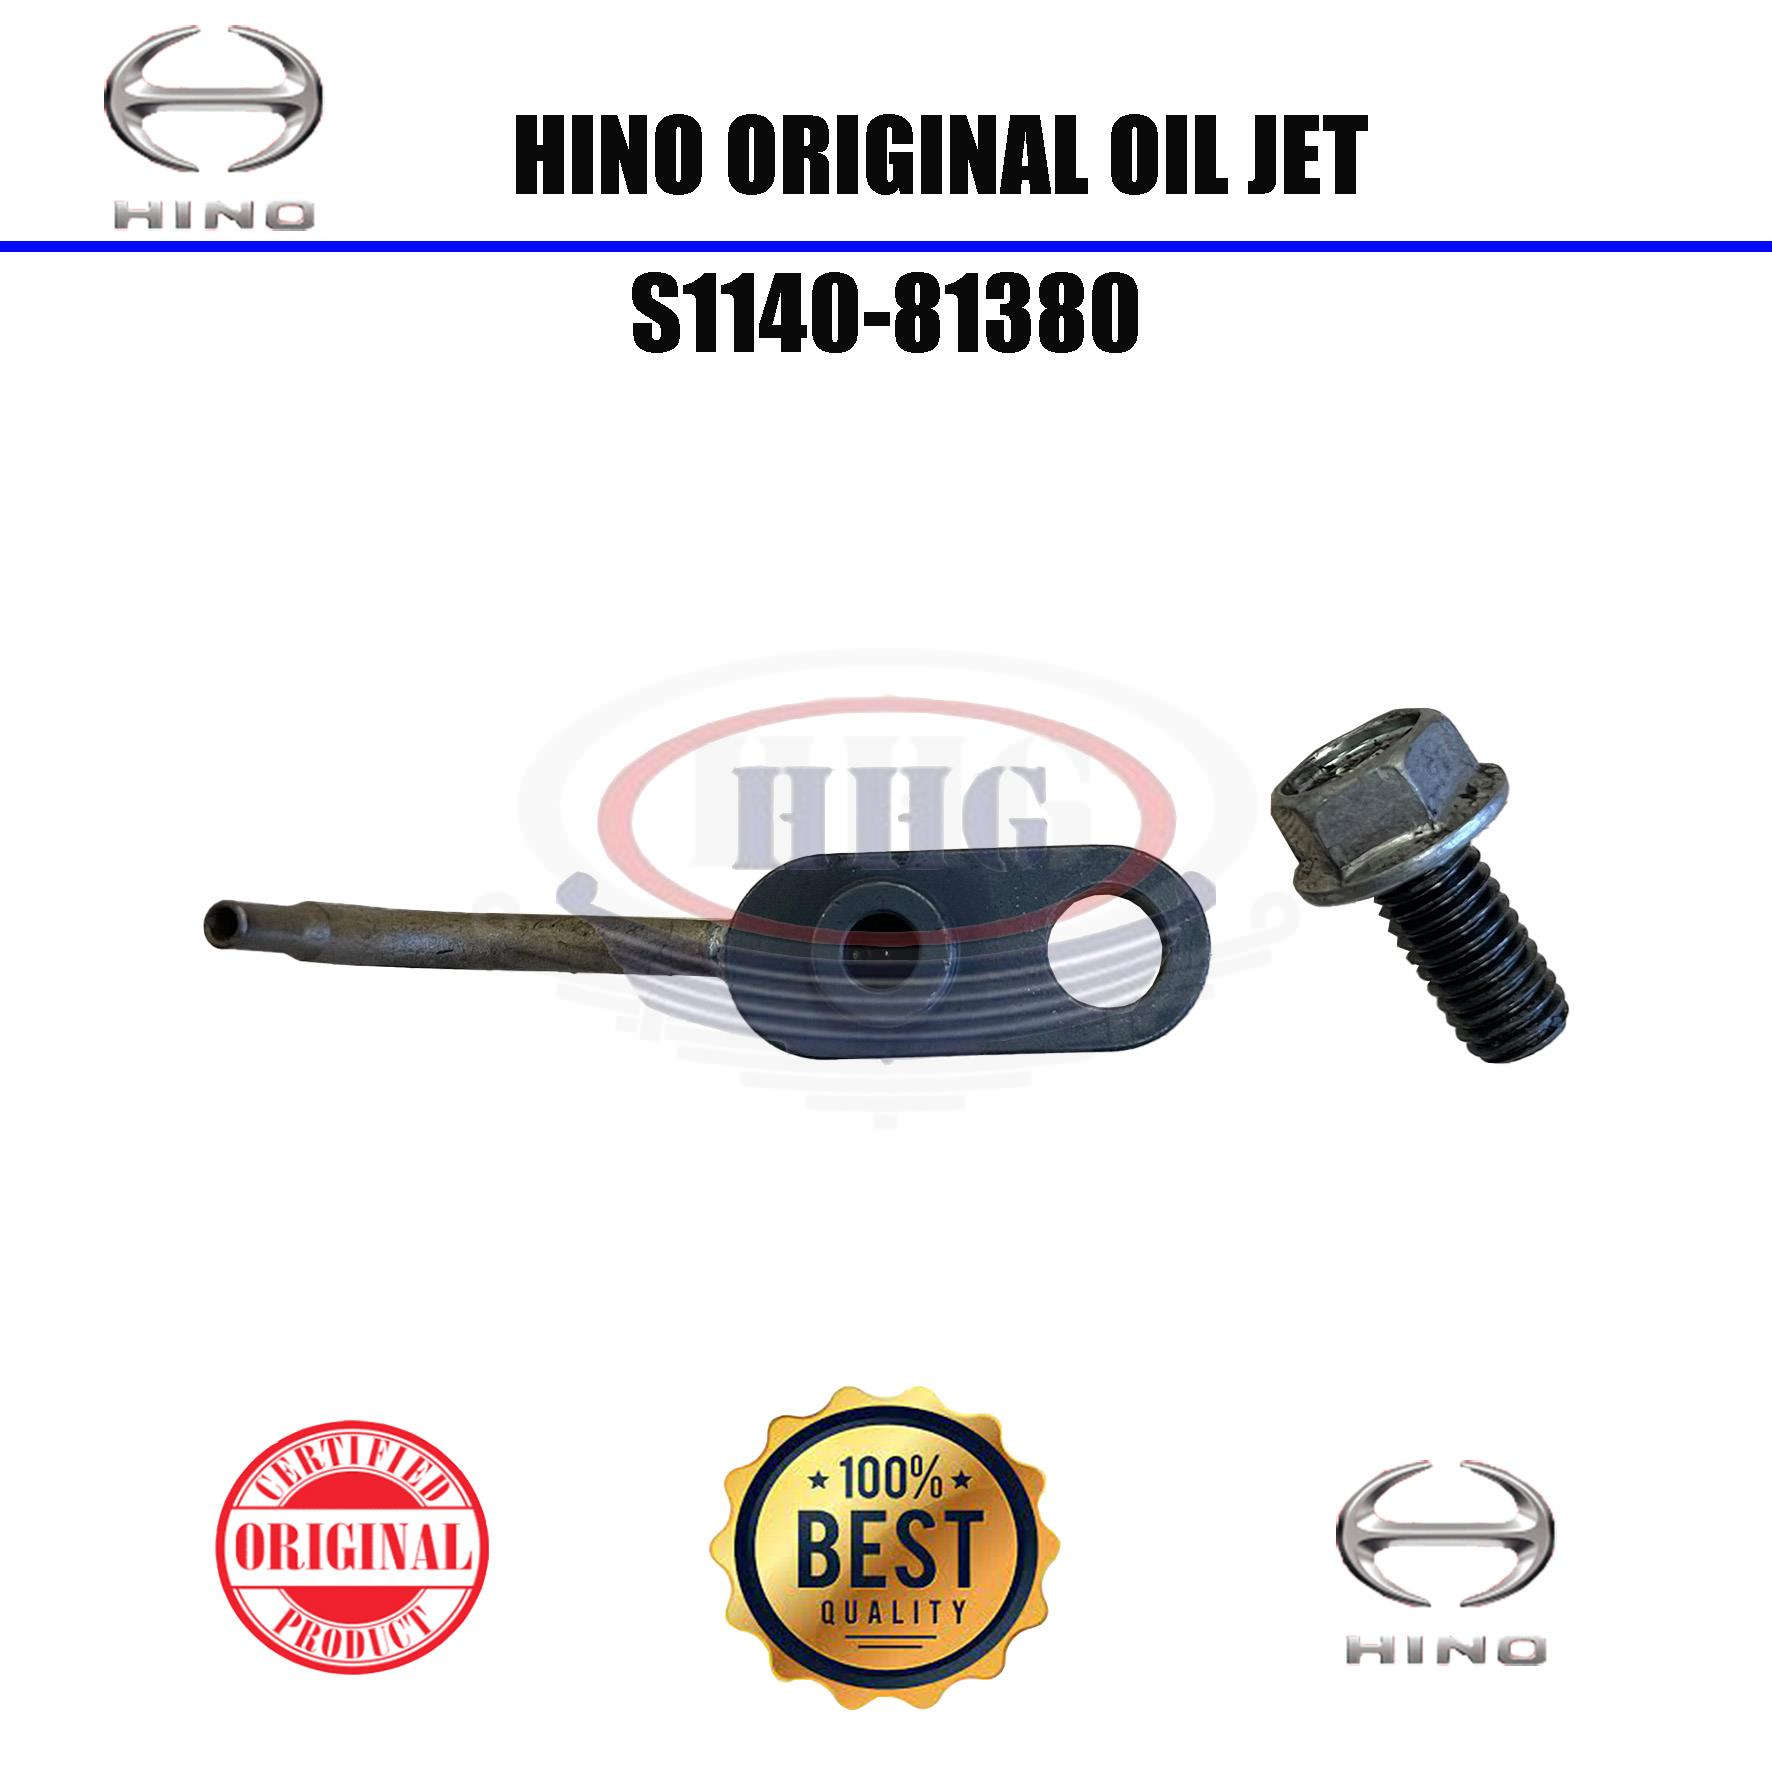 Hino Original N04CT Oil Jet (S1140-81380)